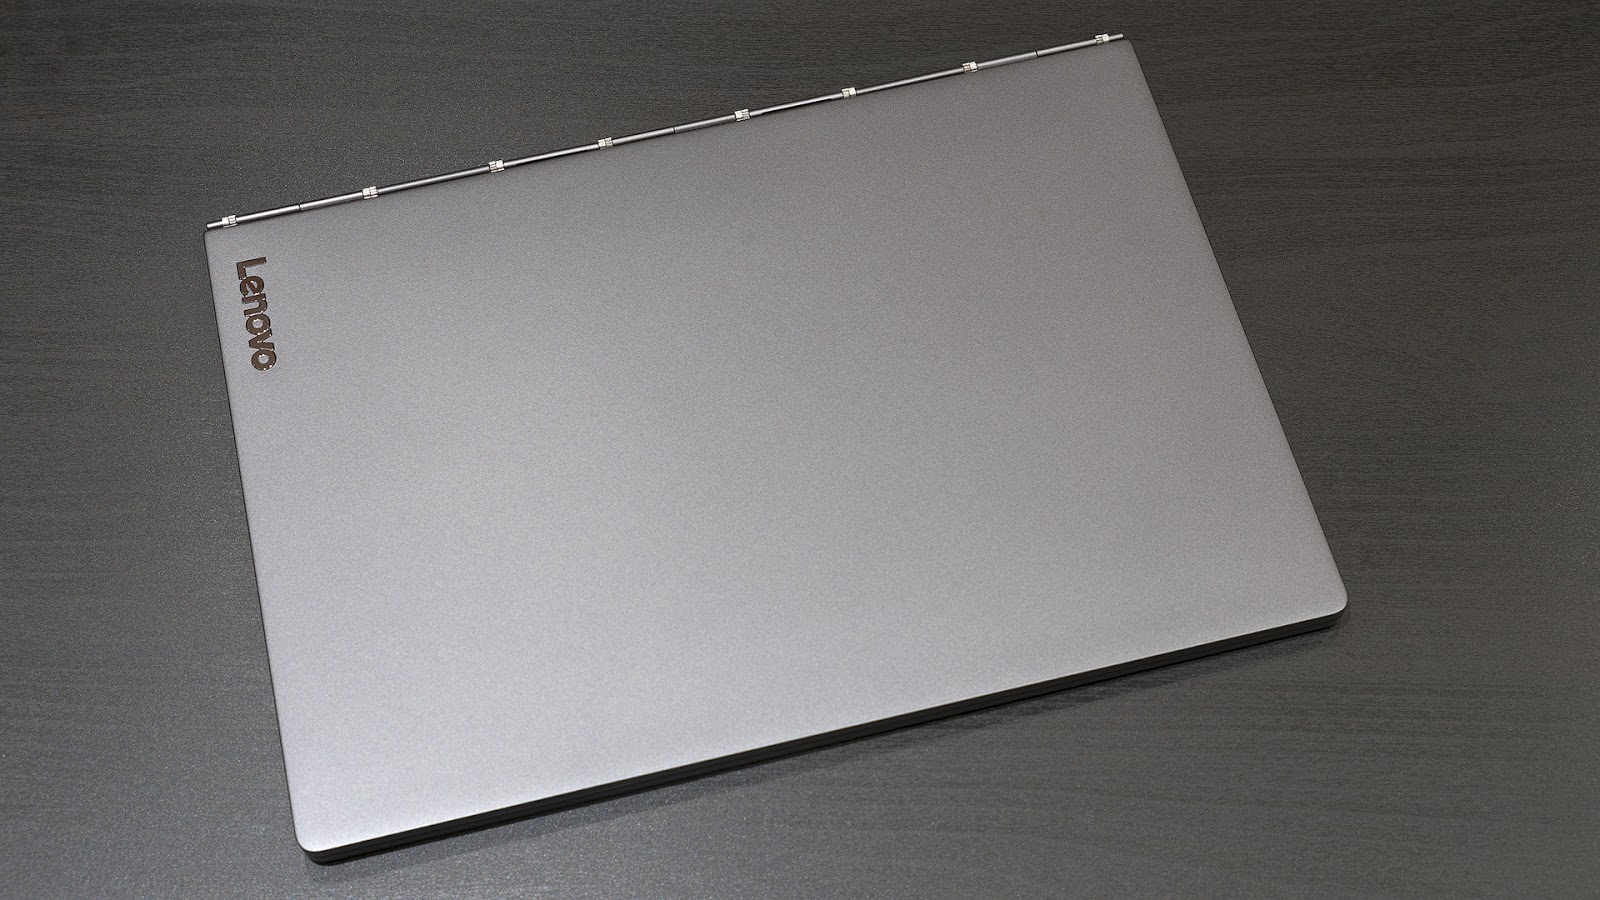 Lenovo YogaBook C930: устройство, которое заменяет сразу четыре гаджета - 2